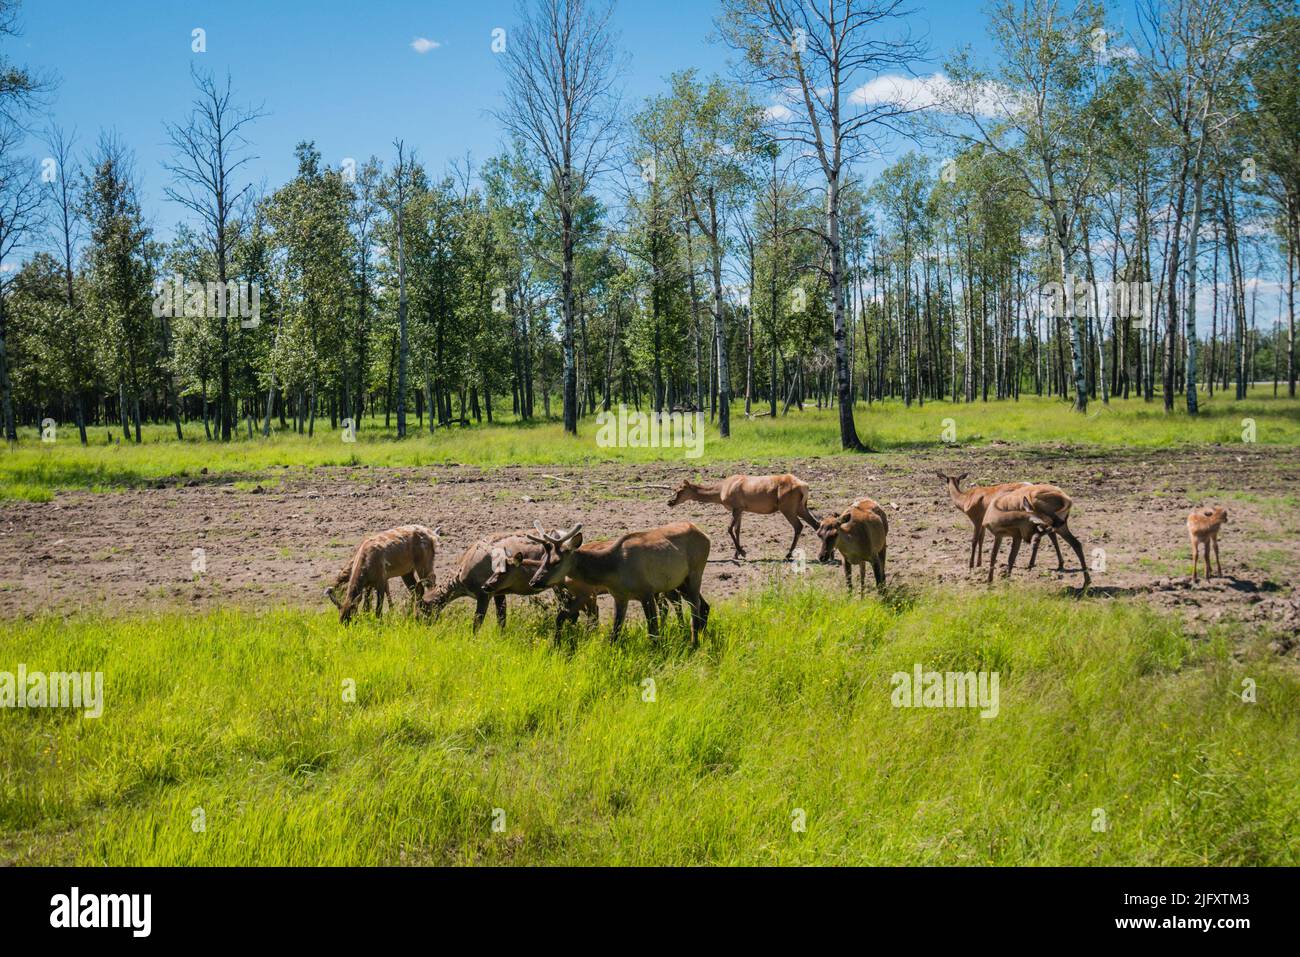 Un grupo de alces, wapiti o ciervos al aire libre Foto de stock